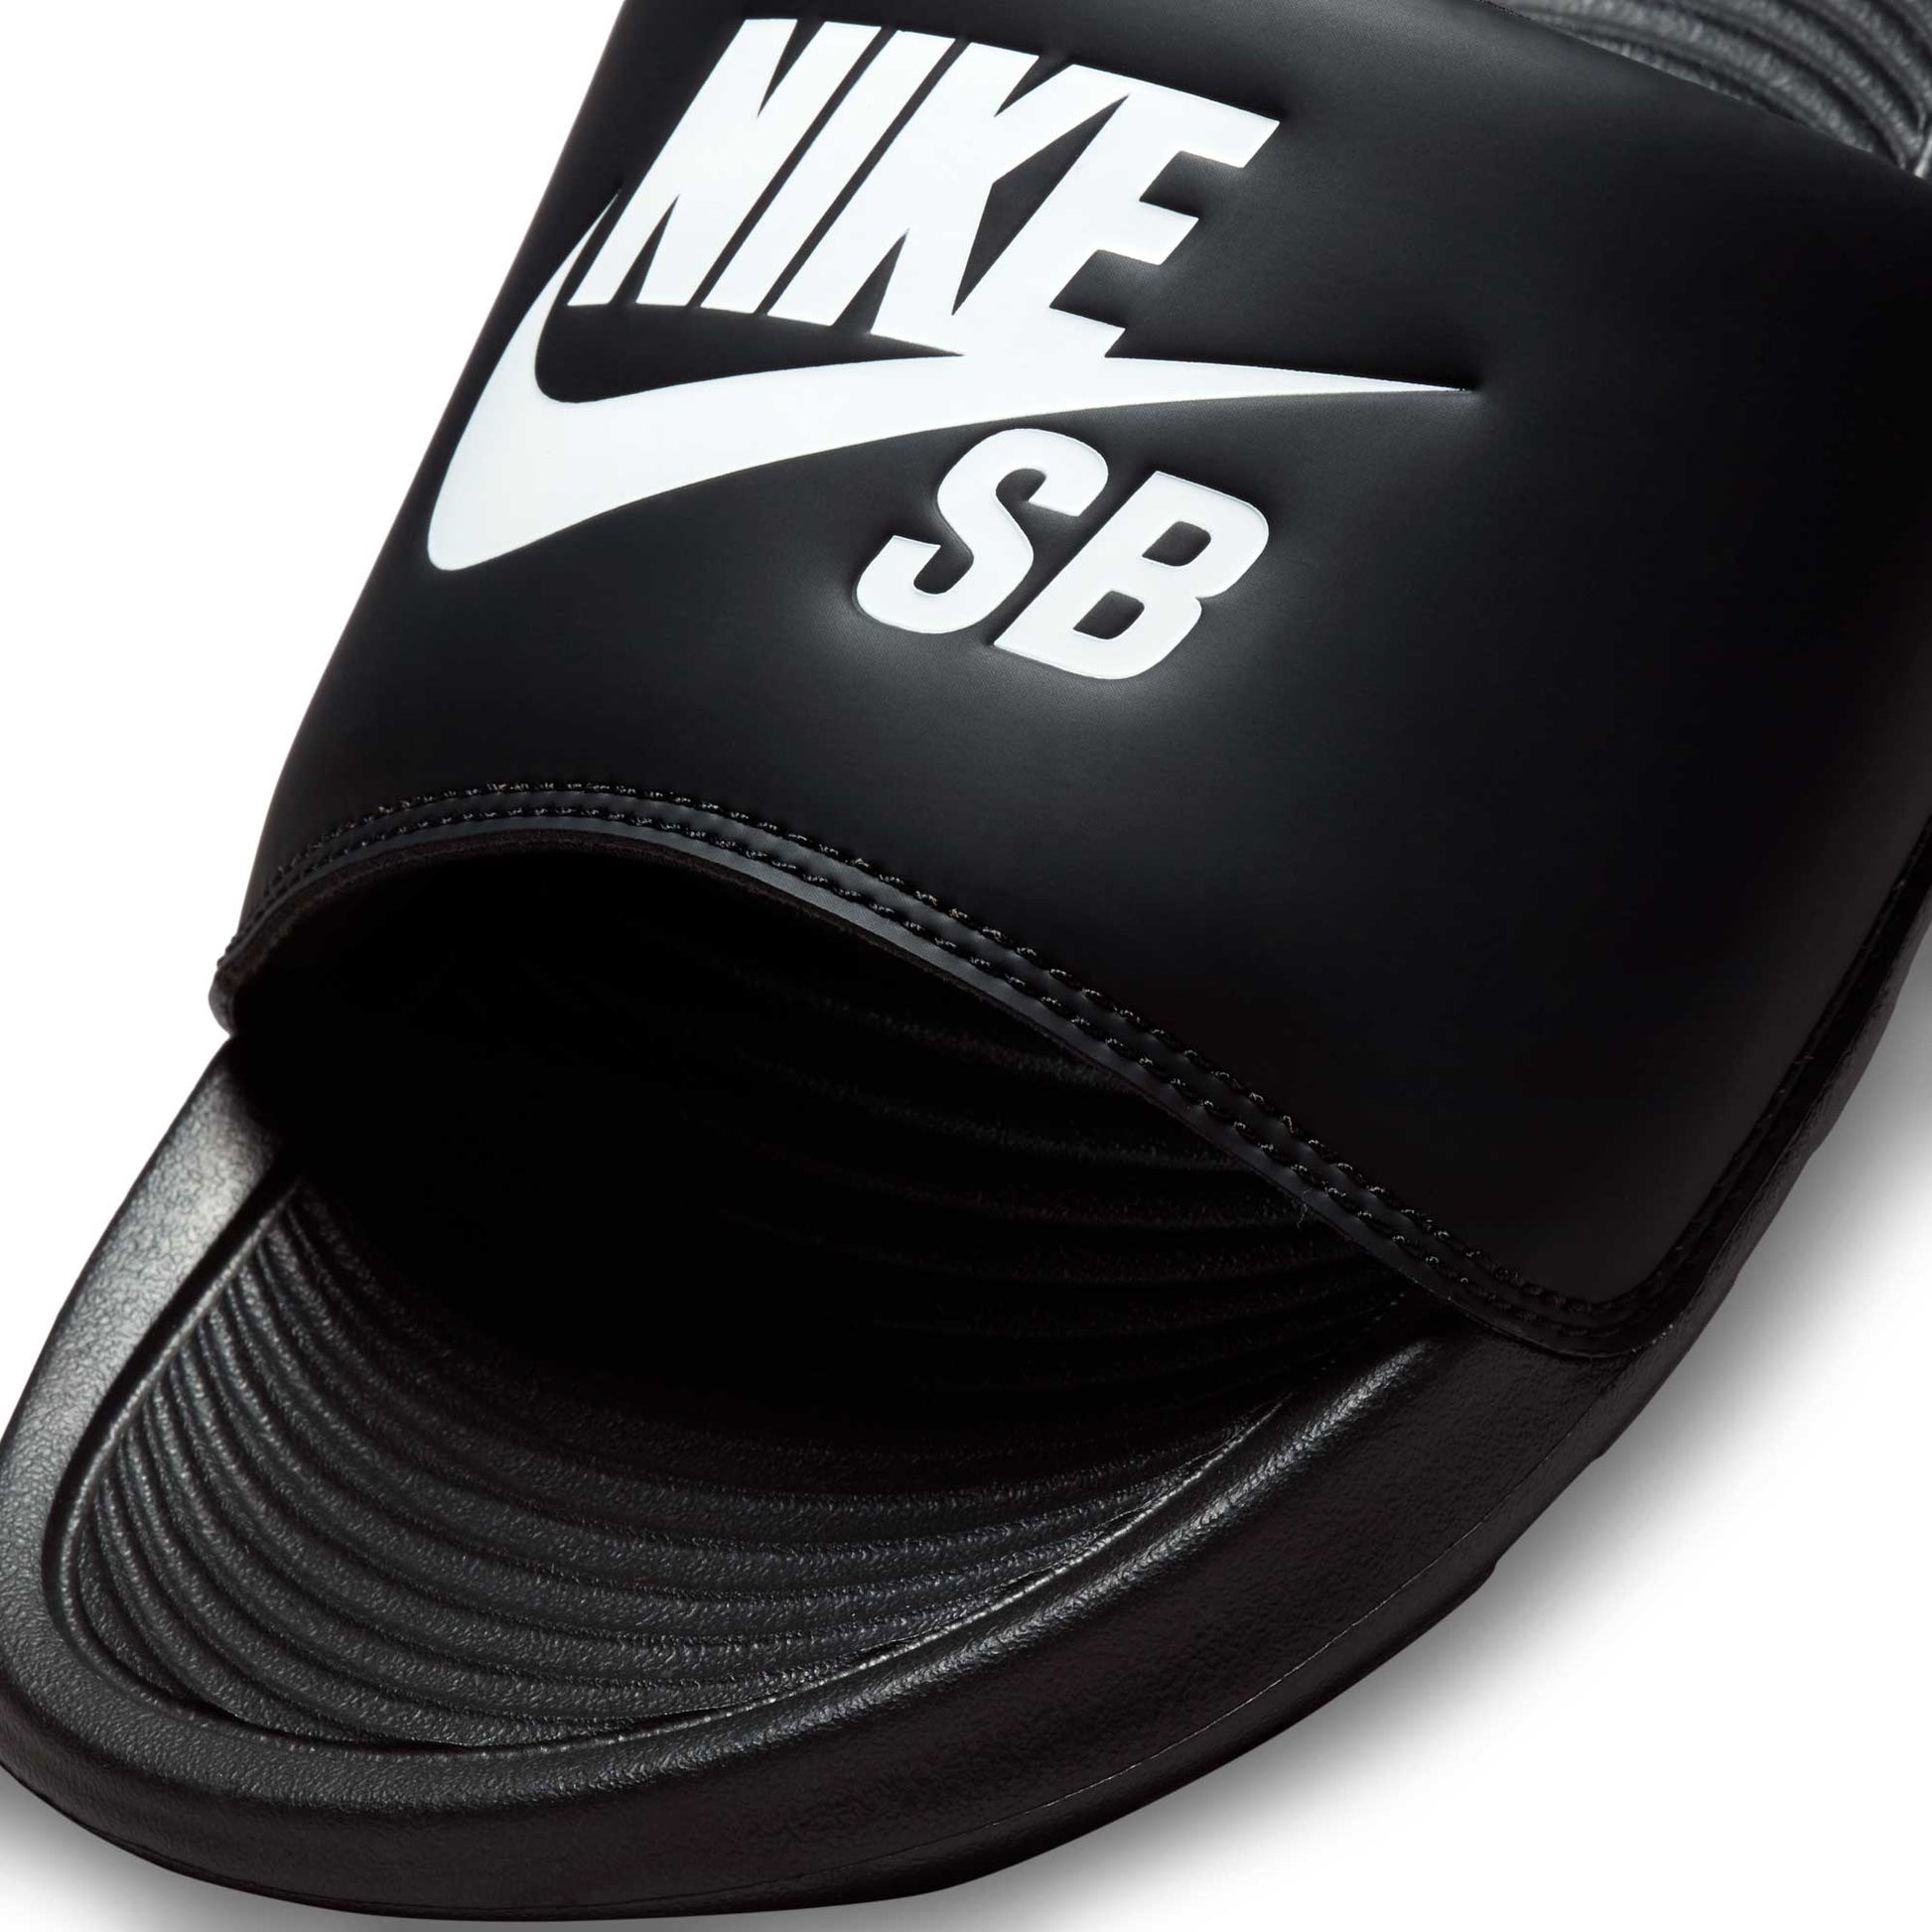 Nike SB Victori One, black/white-black - Tiki Room Skateboards - 2